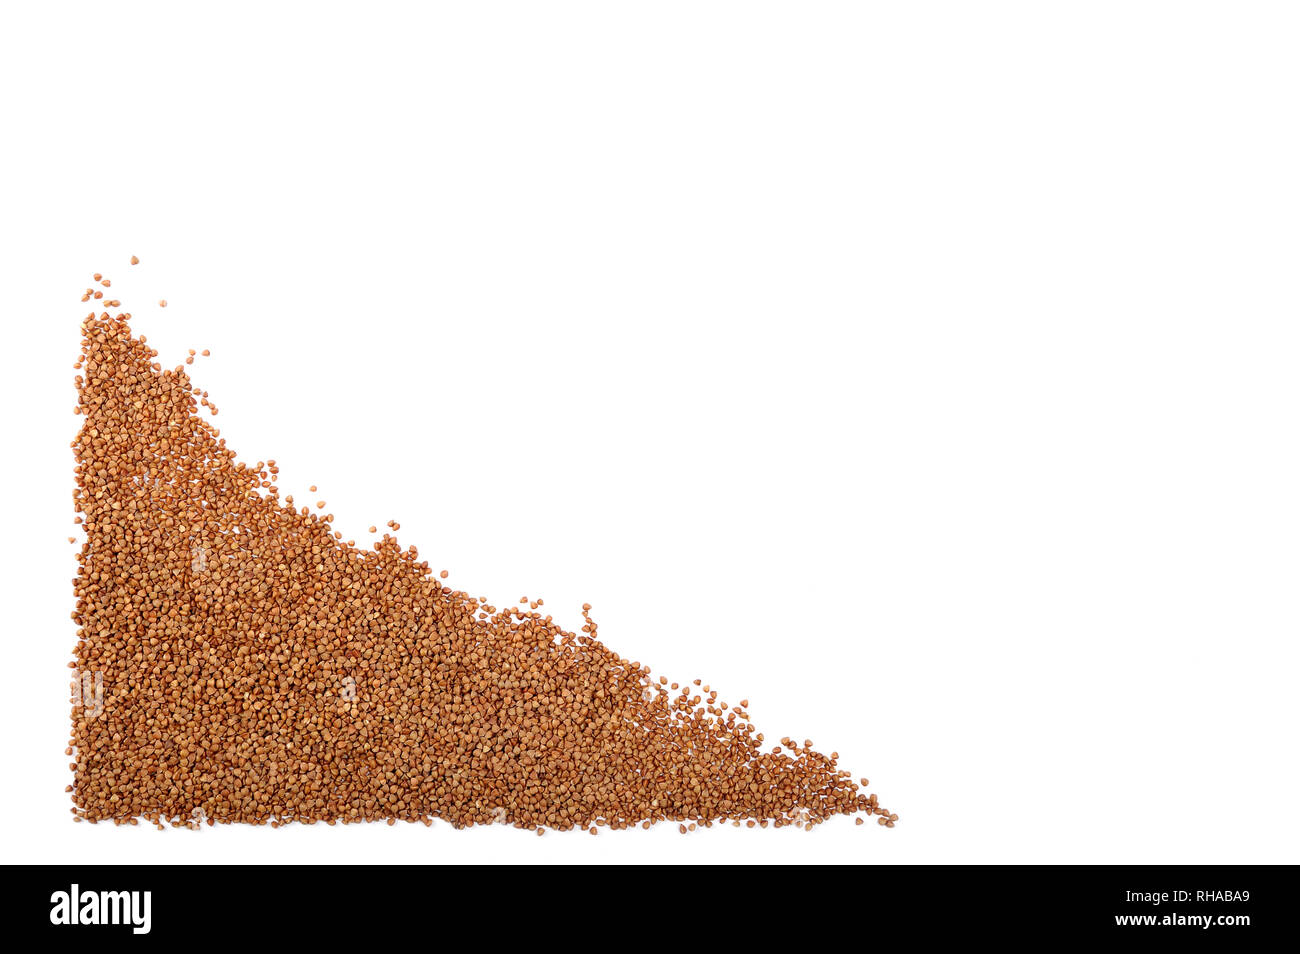 Buckweat biologique isolé sur blanc. Le grain de sarrasin ne contient pas de gluten, il peut être consommé par les personnes atteintes de troubles liés au gluten.épicerie ou suivant un régime con Banque D'Images